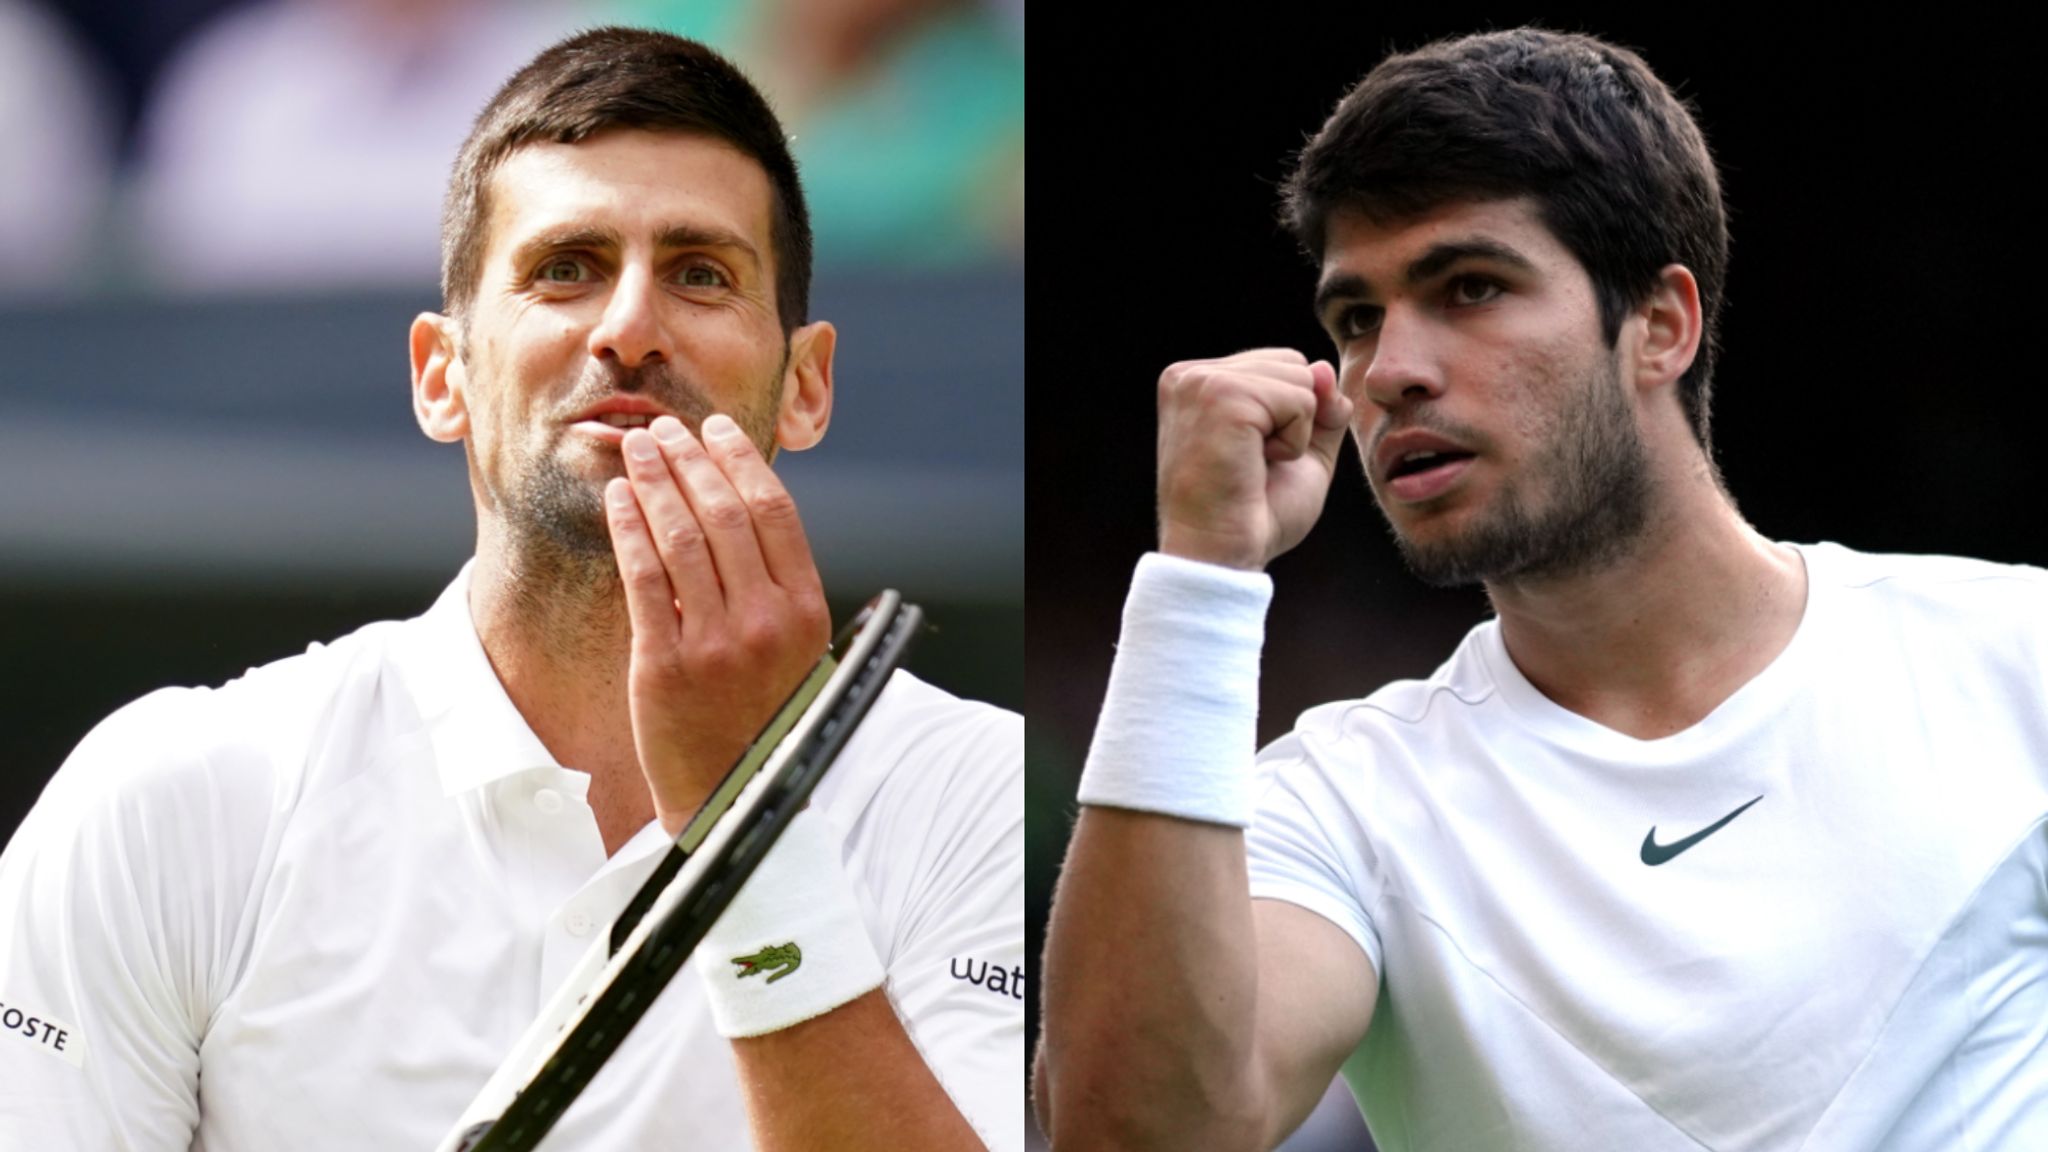 Wimbledon Novak Djokovic reaches quarter-finals for 14th time after curfew-delayed win over Hubert Hurkacz Tennis News Sky Sports